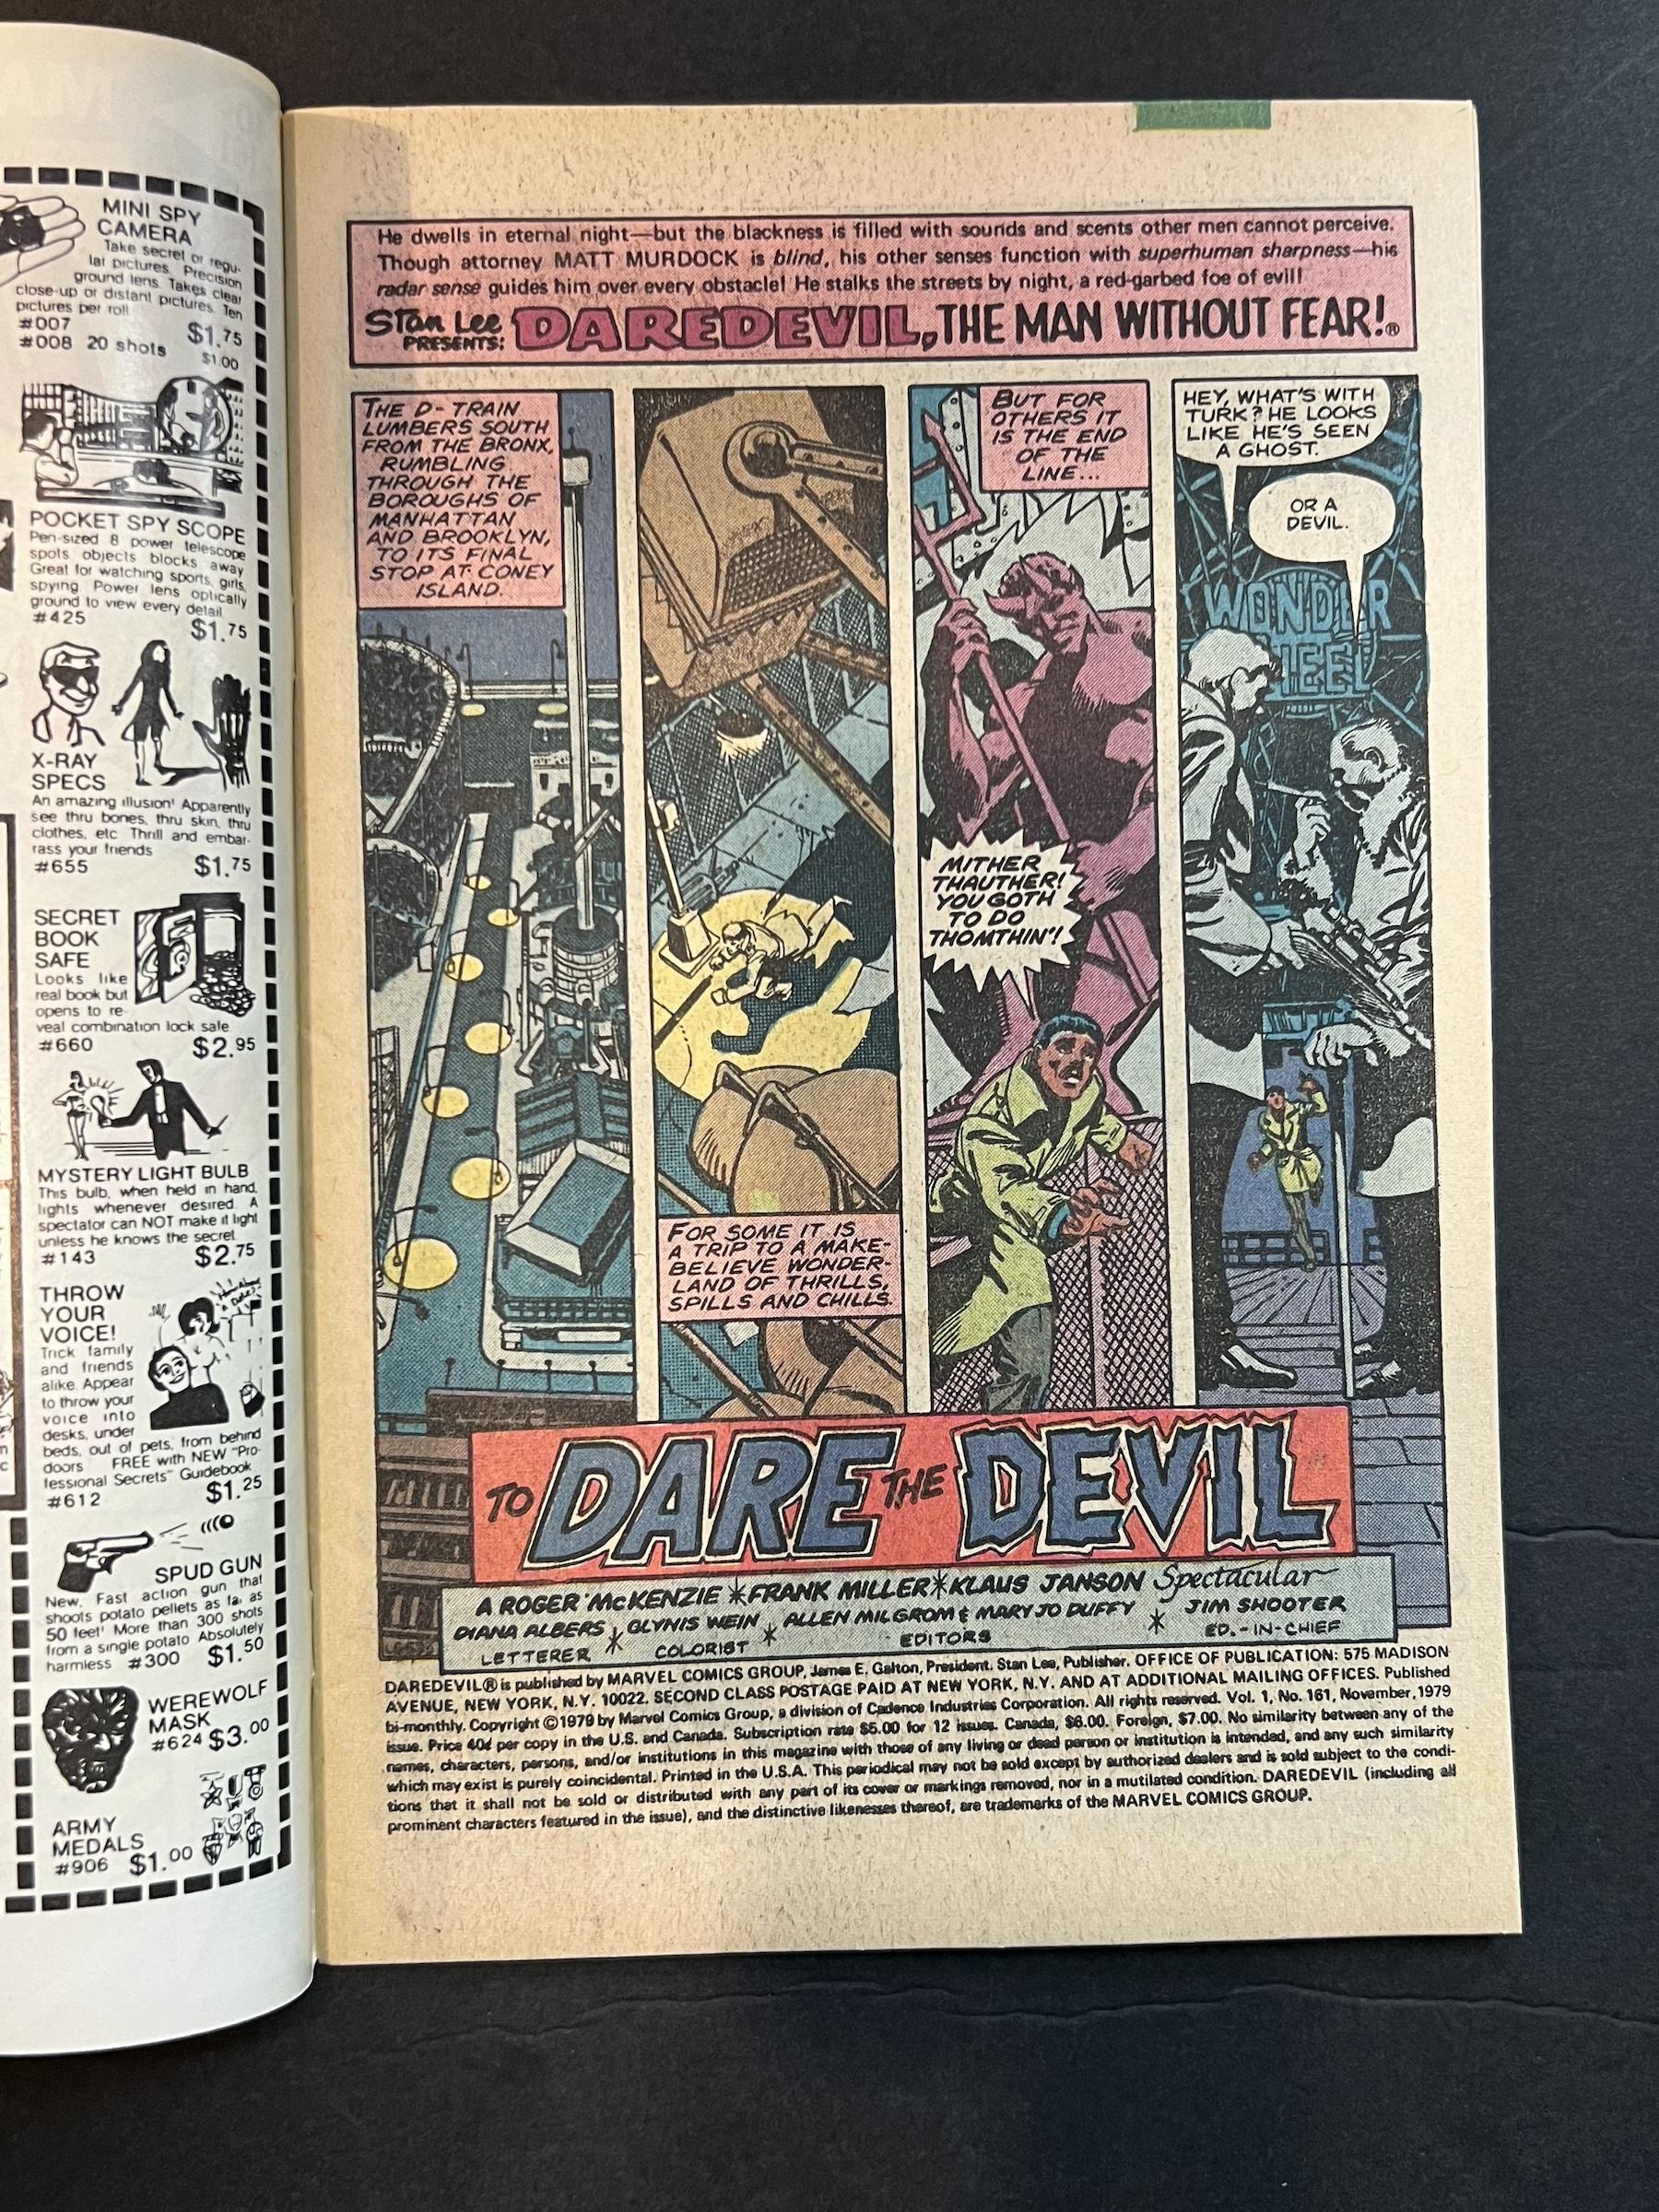 Daredevil #161 & #160 Marvel Comic Books